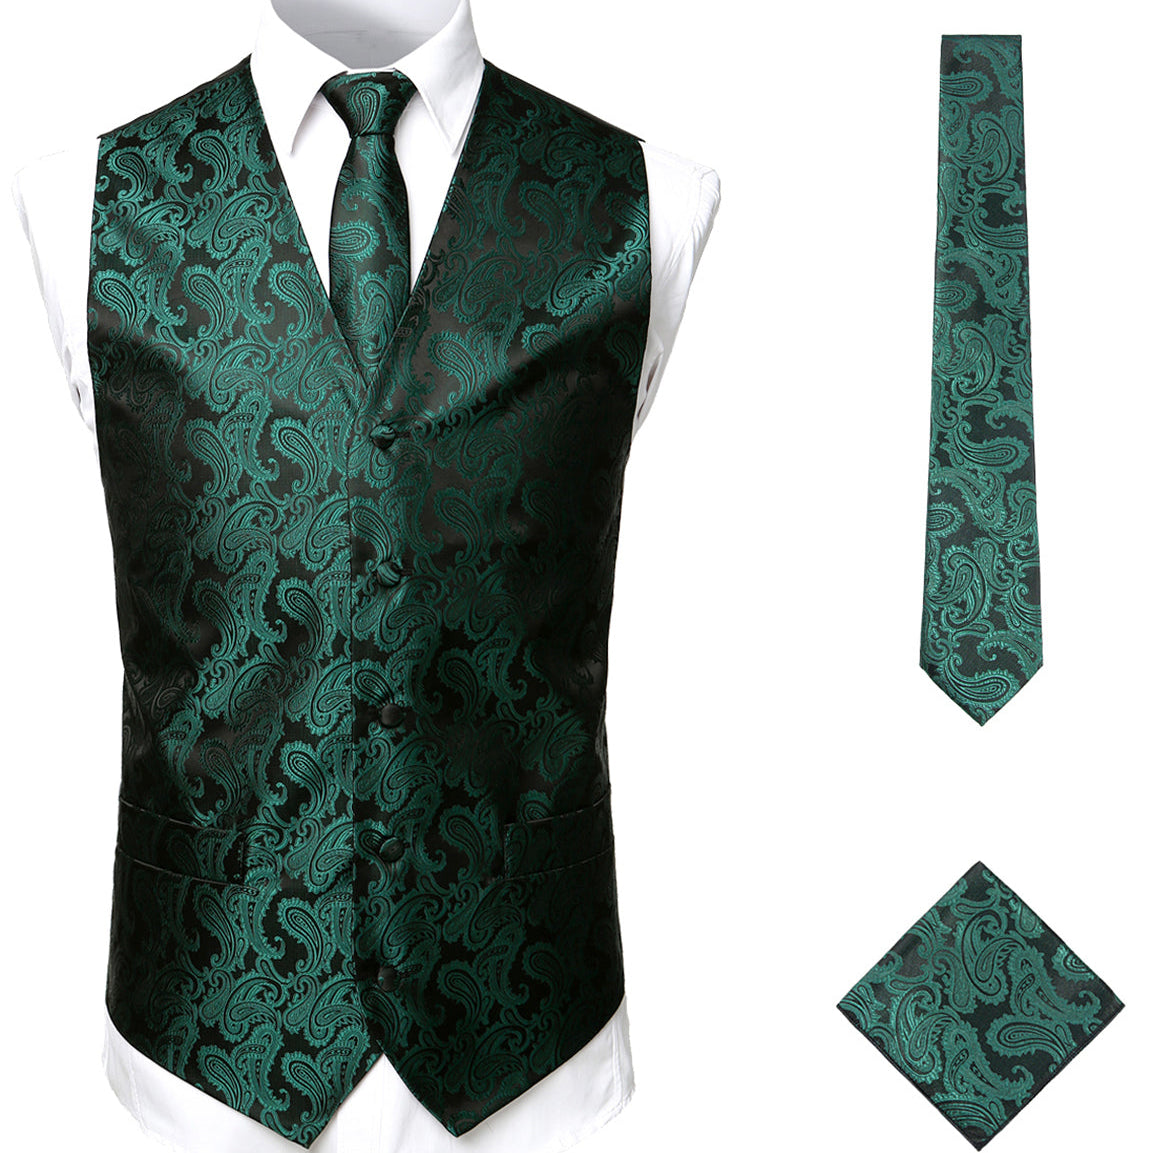 Men's 3pc Jacquard Paisley Vest & Tie Set Classic Necktie Pocket Square Waistcoat for Suit or Tuxedo